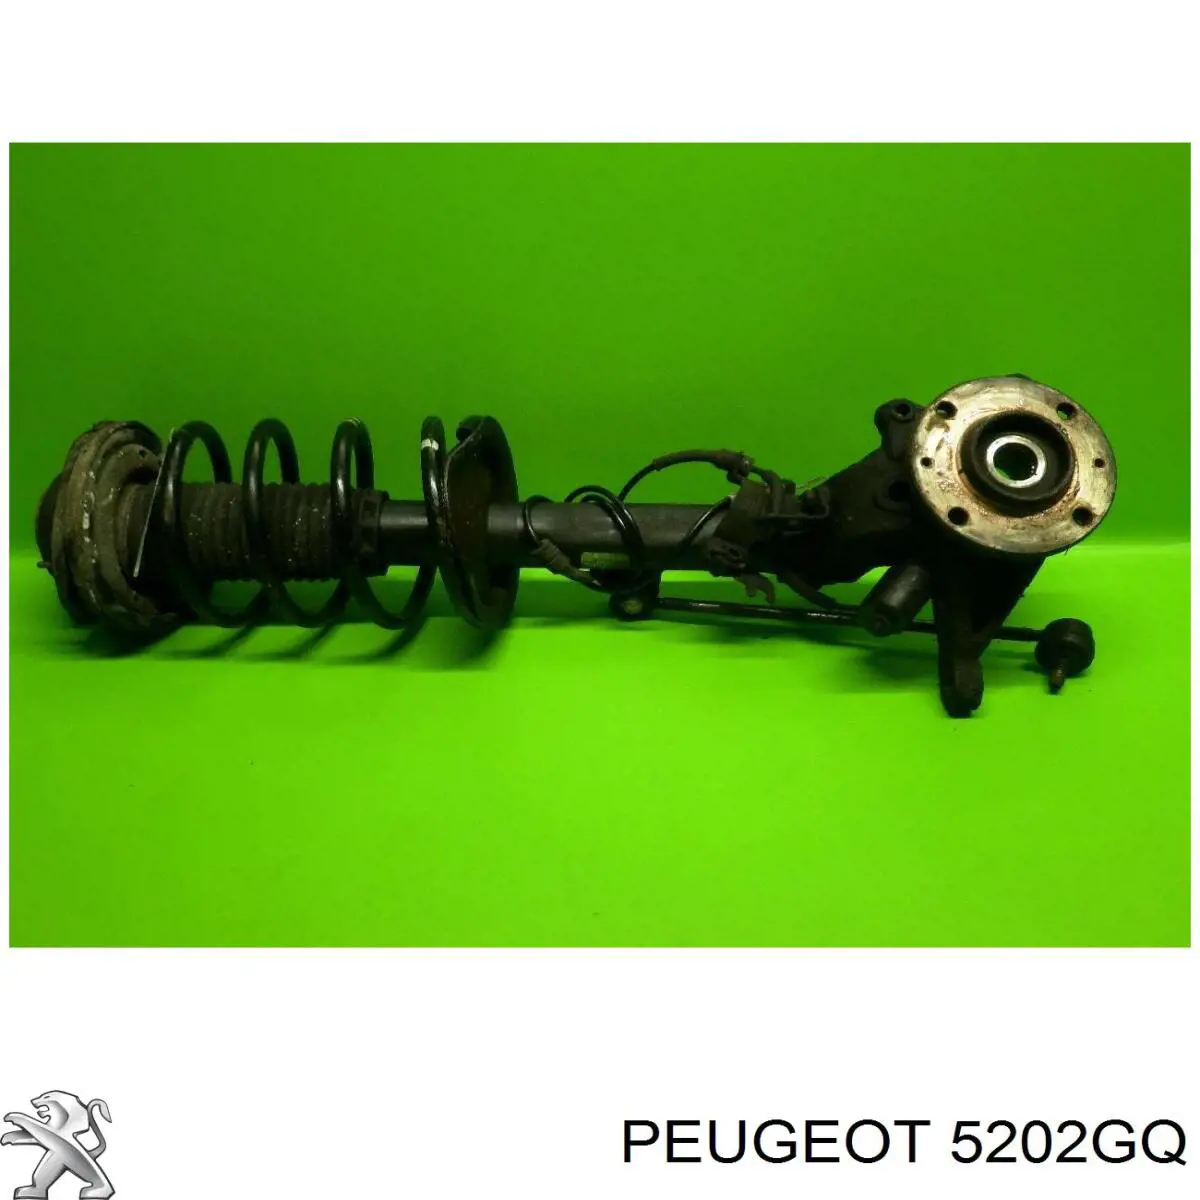 5202GQ Peugeot/Citroen